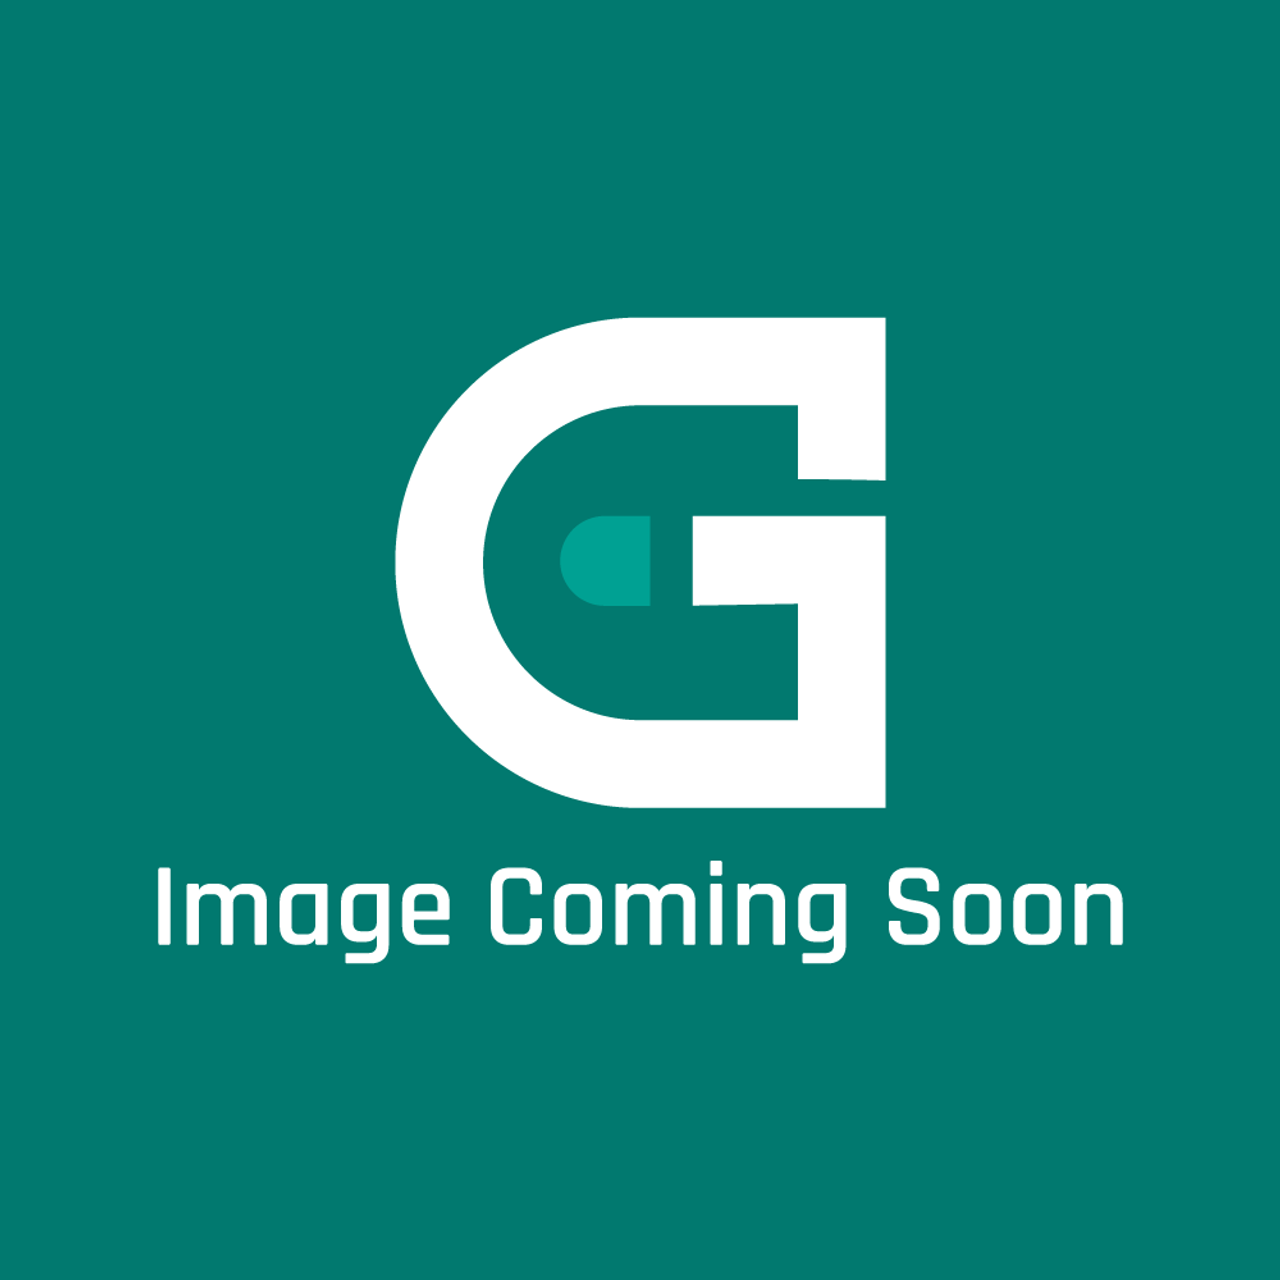 Garland 4528281 - Rear Panel-Main36 - Image Coming Soon!